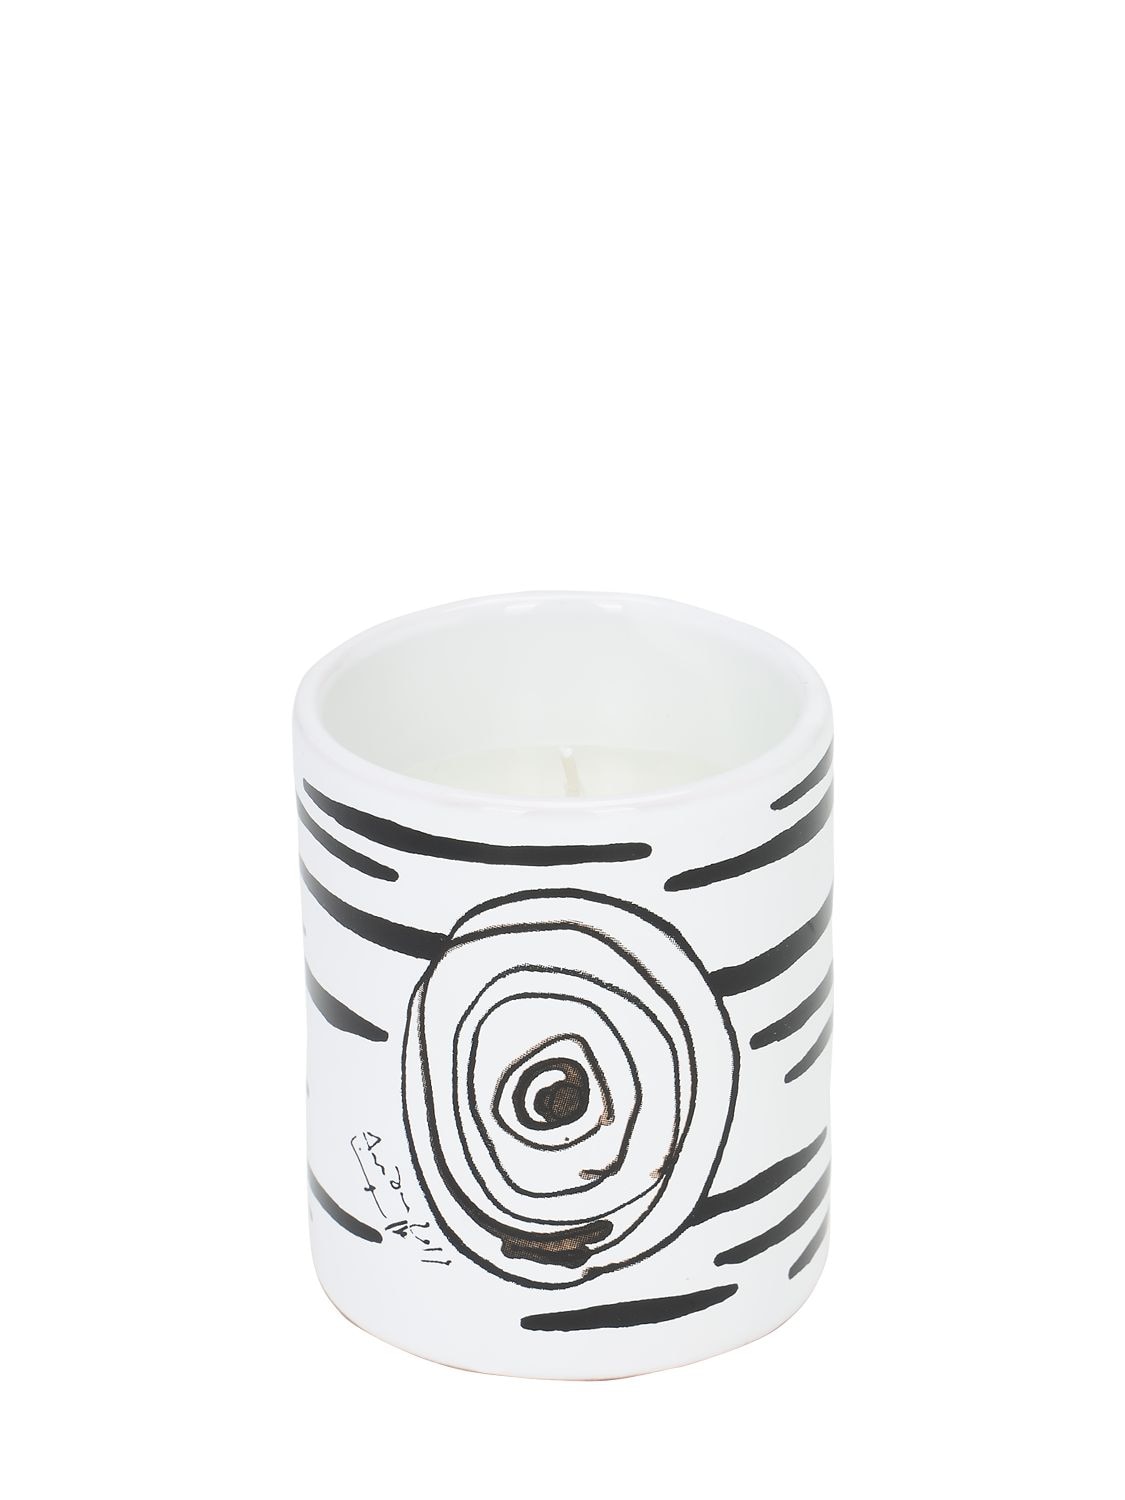 Antonio Marras Iv Ceramic Candle In White,black